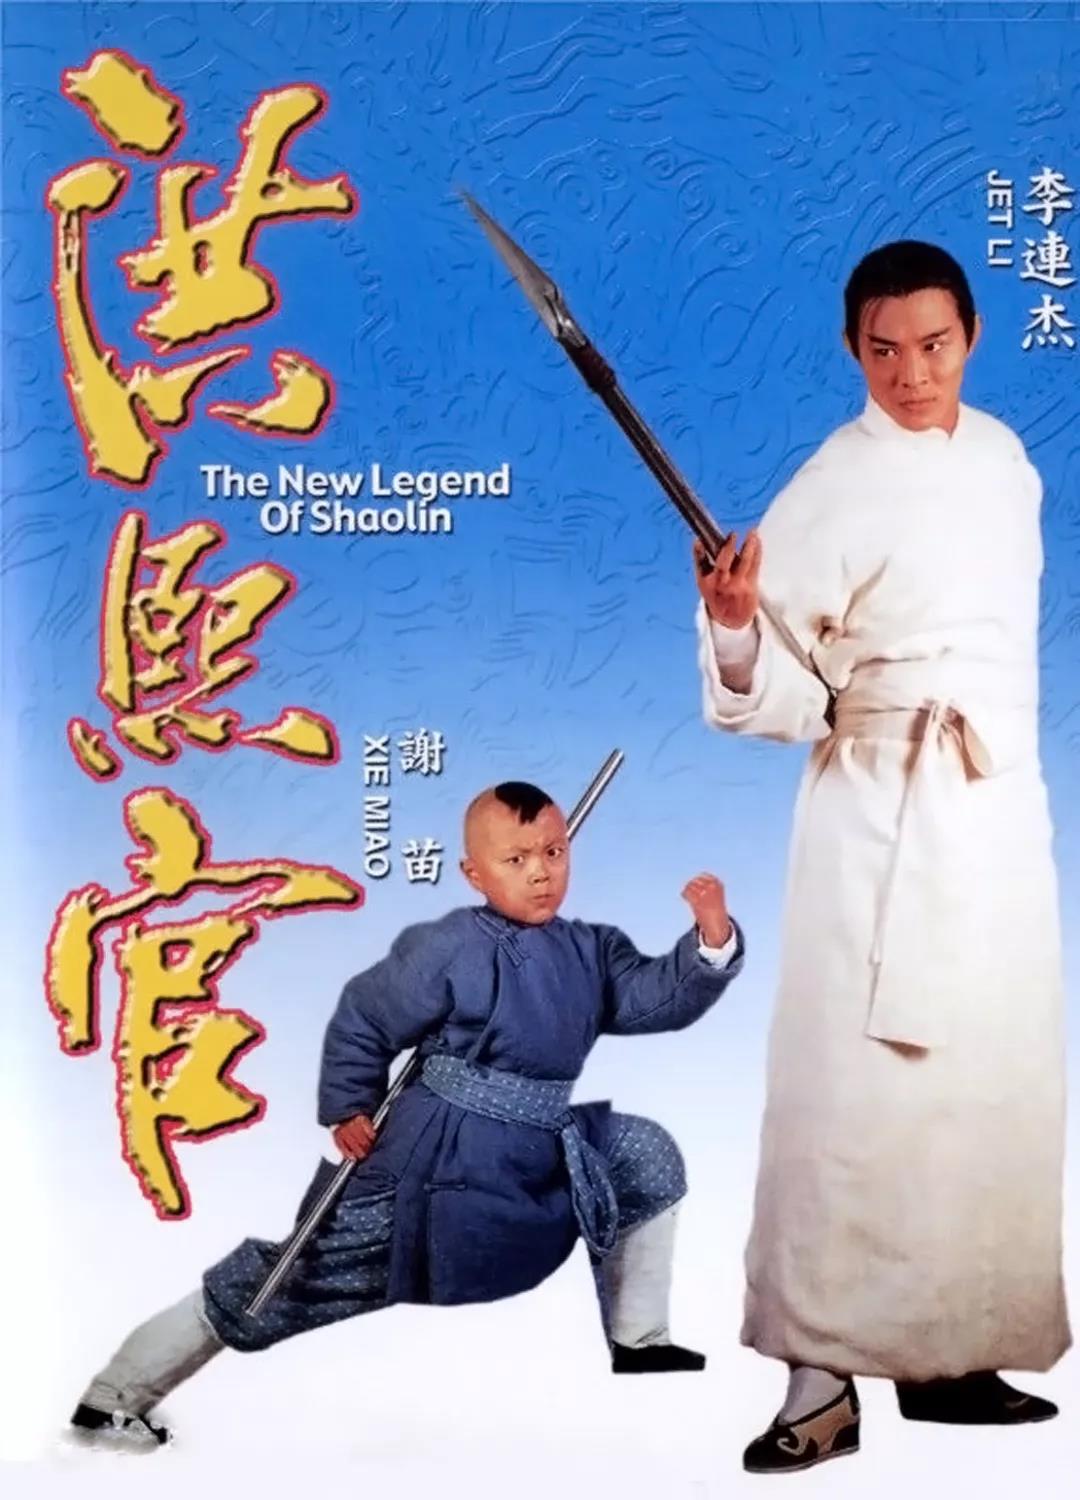 20年前李连杰的清朝武侠电影,李连杰唯一没有剃头的武侠经典!